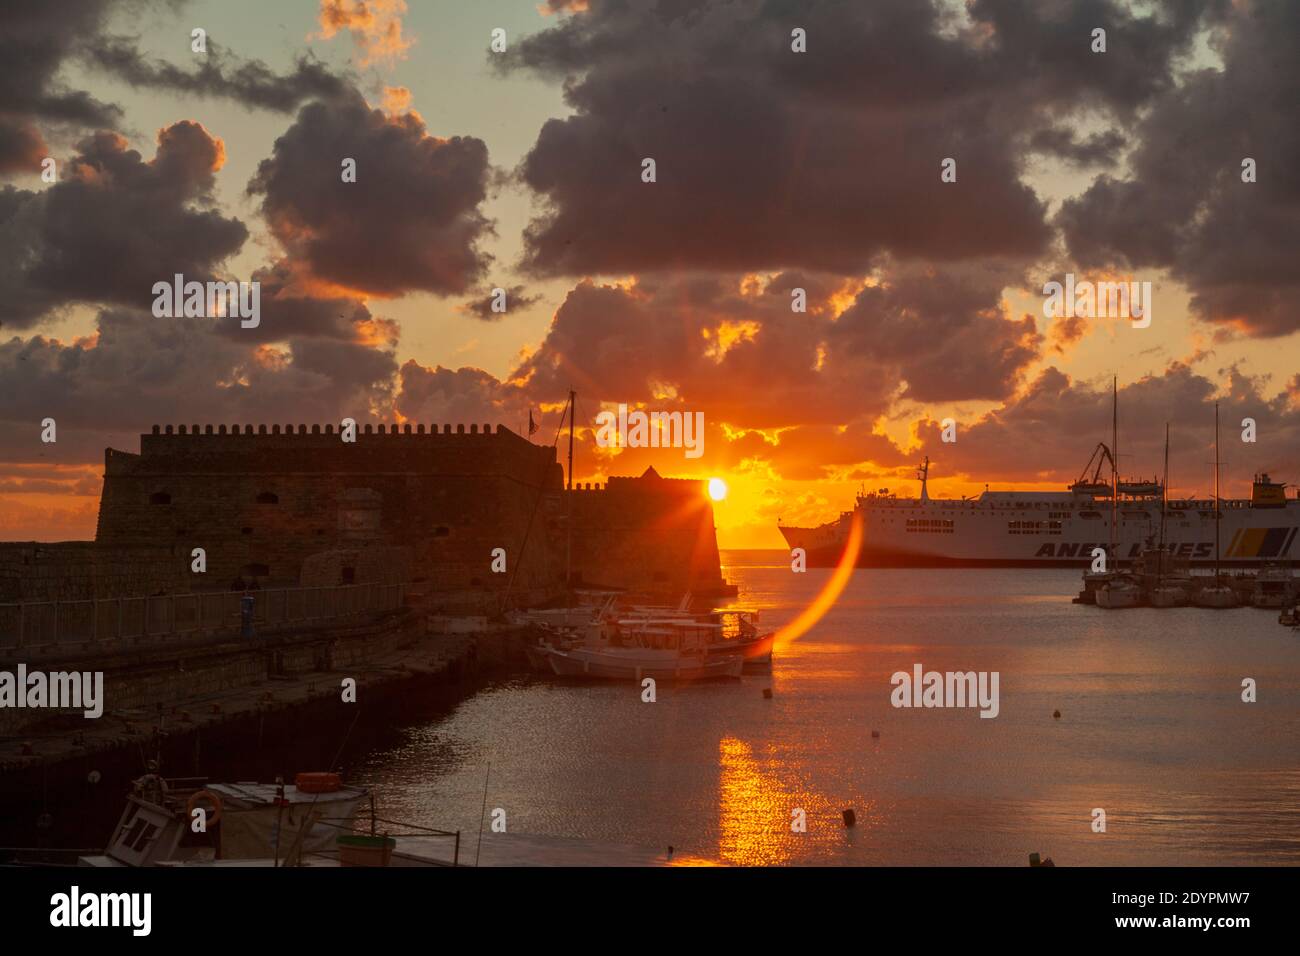 Sonnenaufgang im alten Hafen von Heraklion, auf Kreta, Griechenland, Europa. Die Festung gesehen ist Koules (Kules), die alte venezianische Burg auch als Roca a Mare bekannt Stockfoto